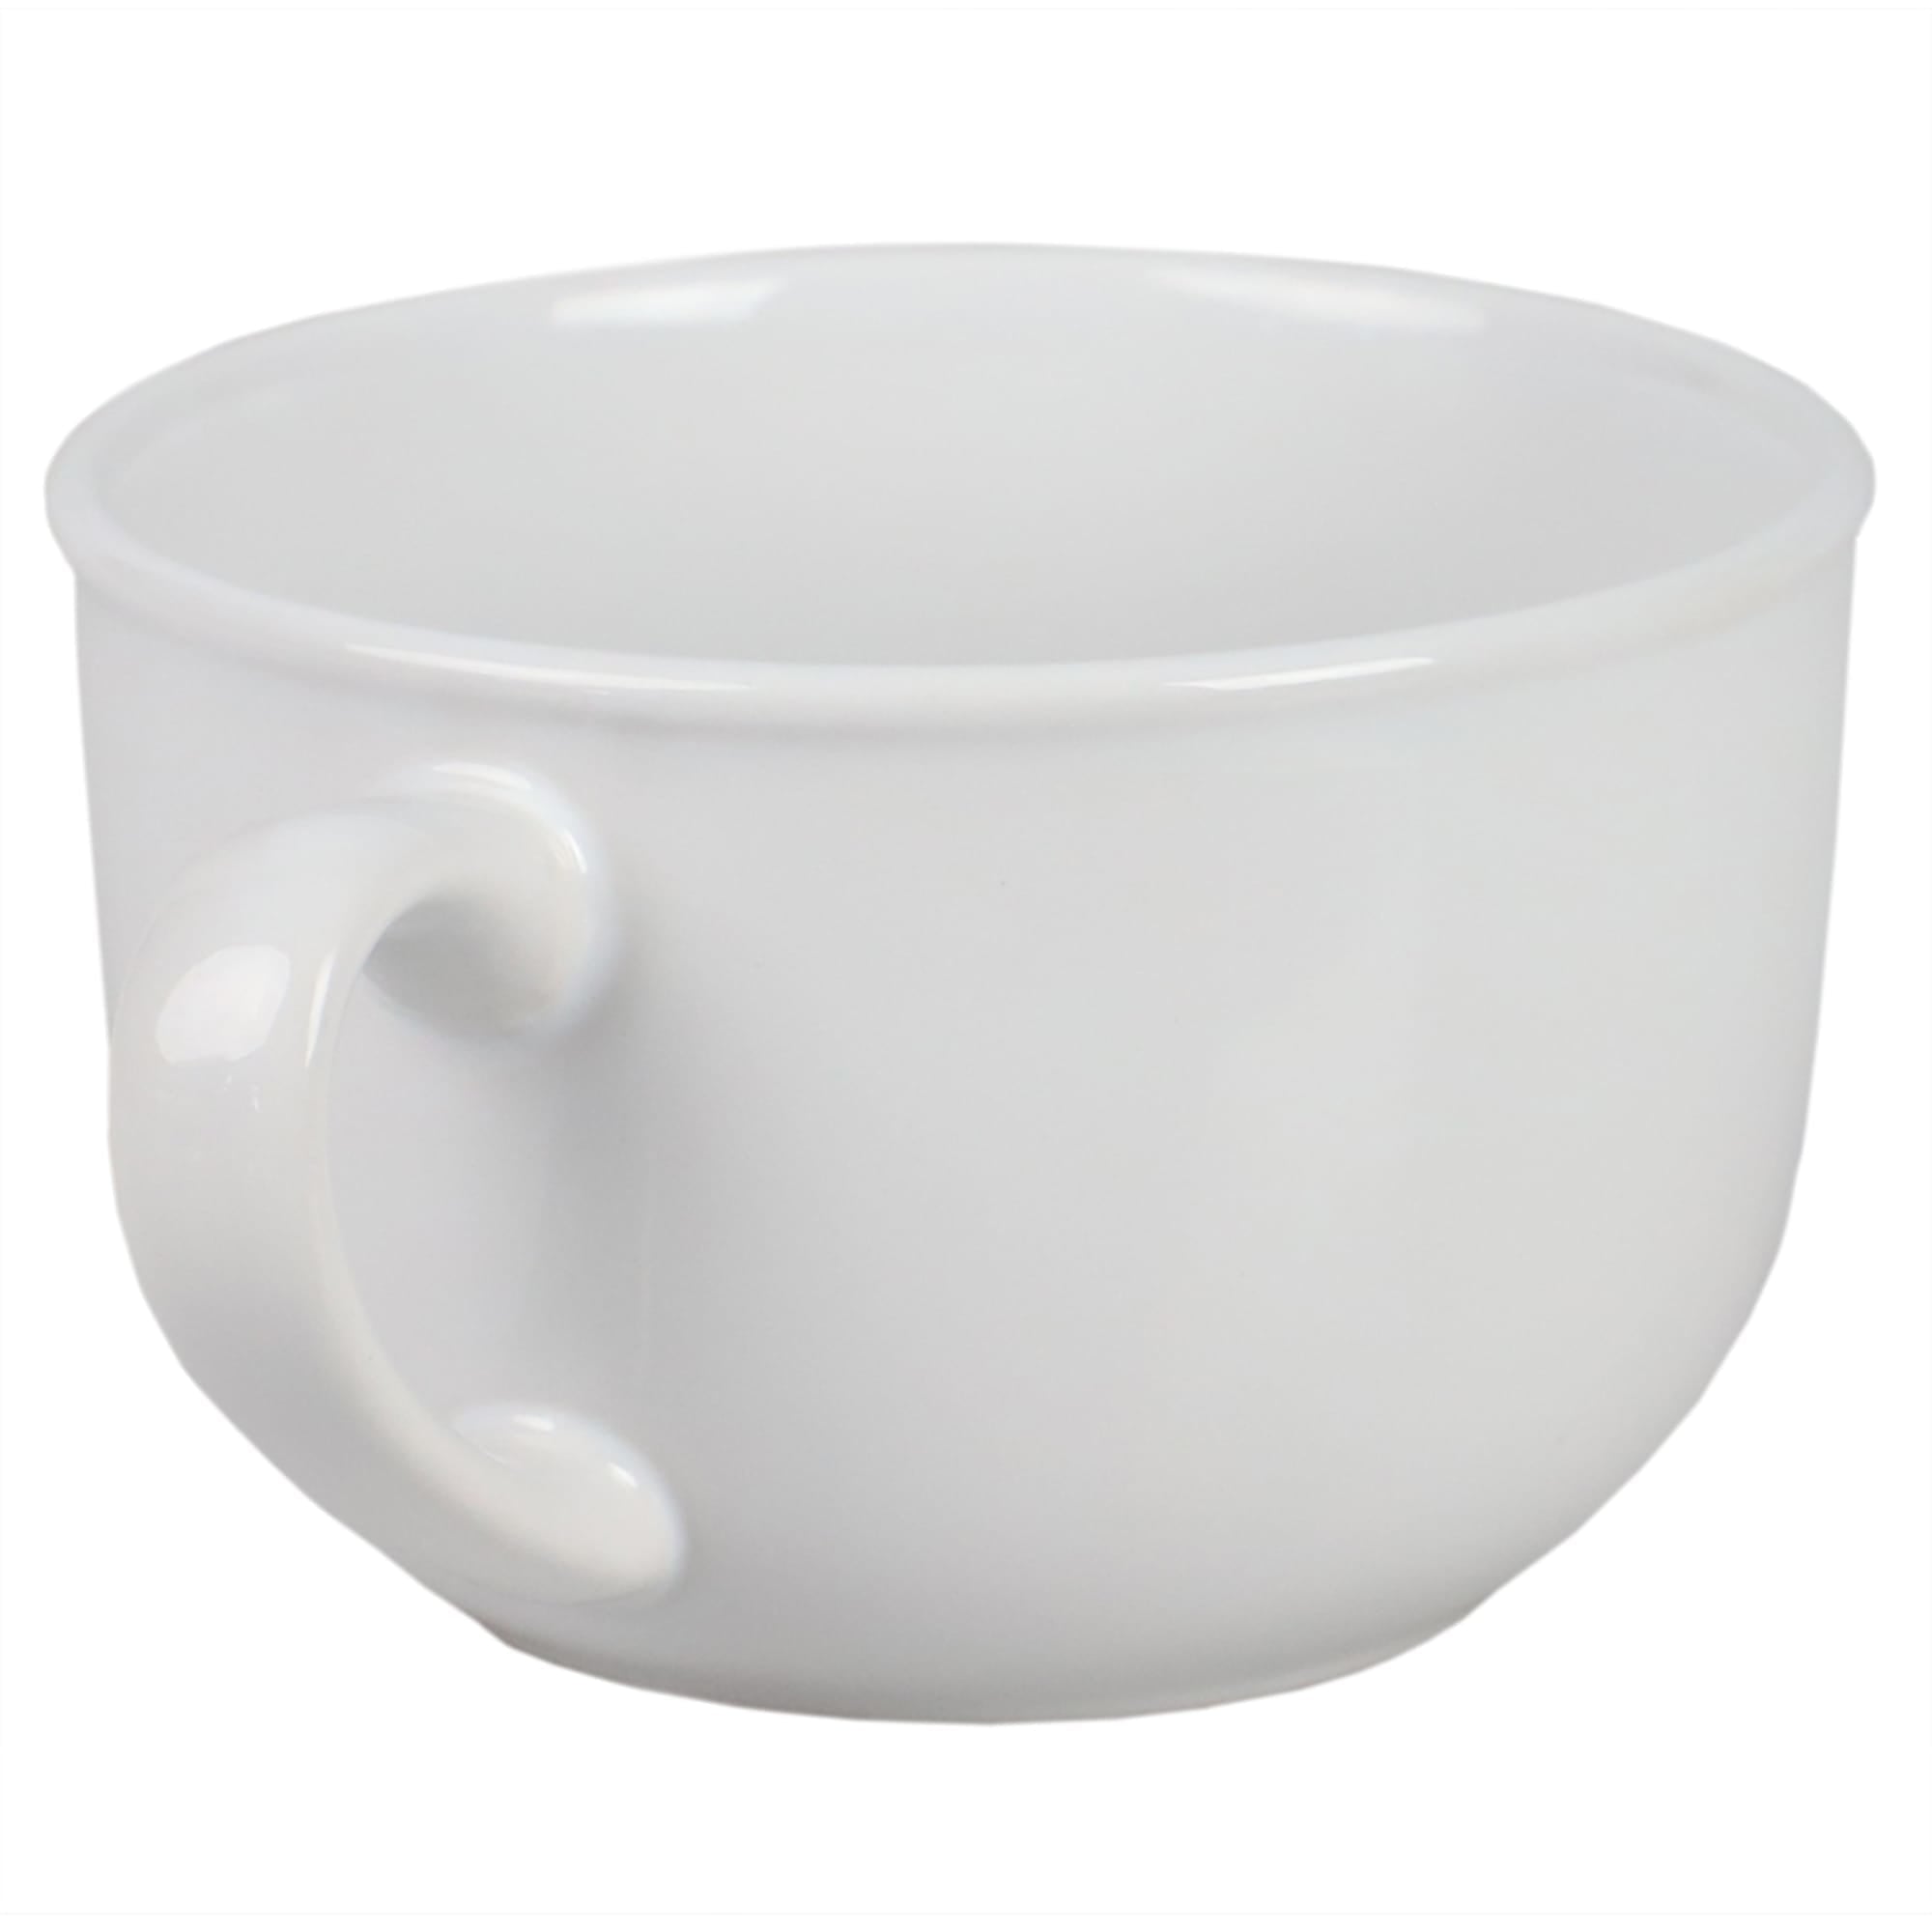 Home Basics Jumbo 22 oz Ceramic Mug, White $2.00 EACH, CASE PACK OF 24